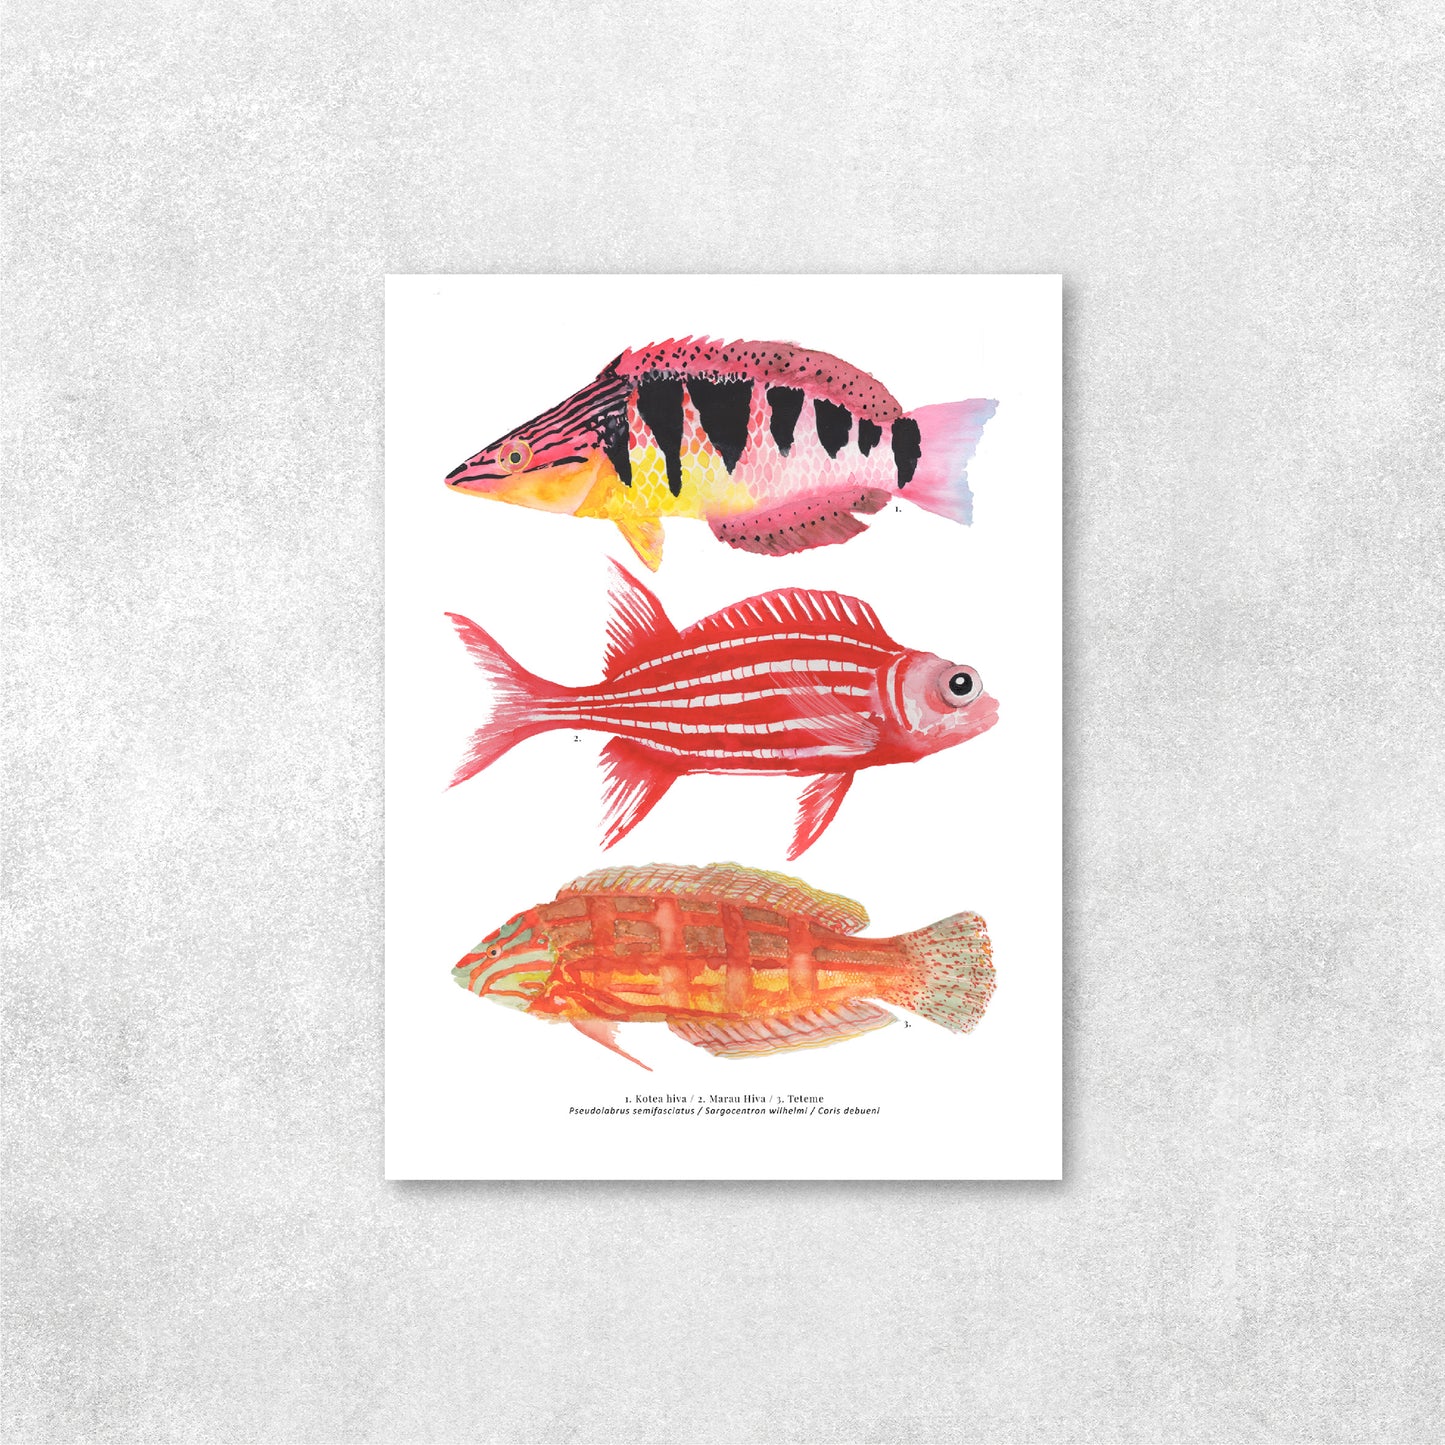 Reproducción de una ilustración en acuarela de 3 peces coloridos, pez Kotea hiva, pez marau hiva, pez teteme.